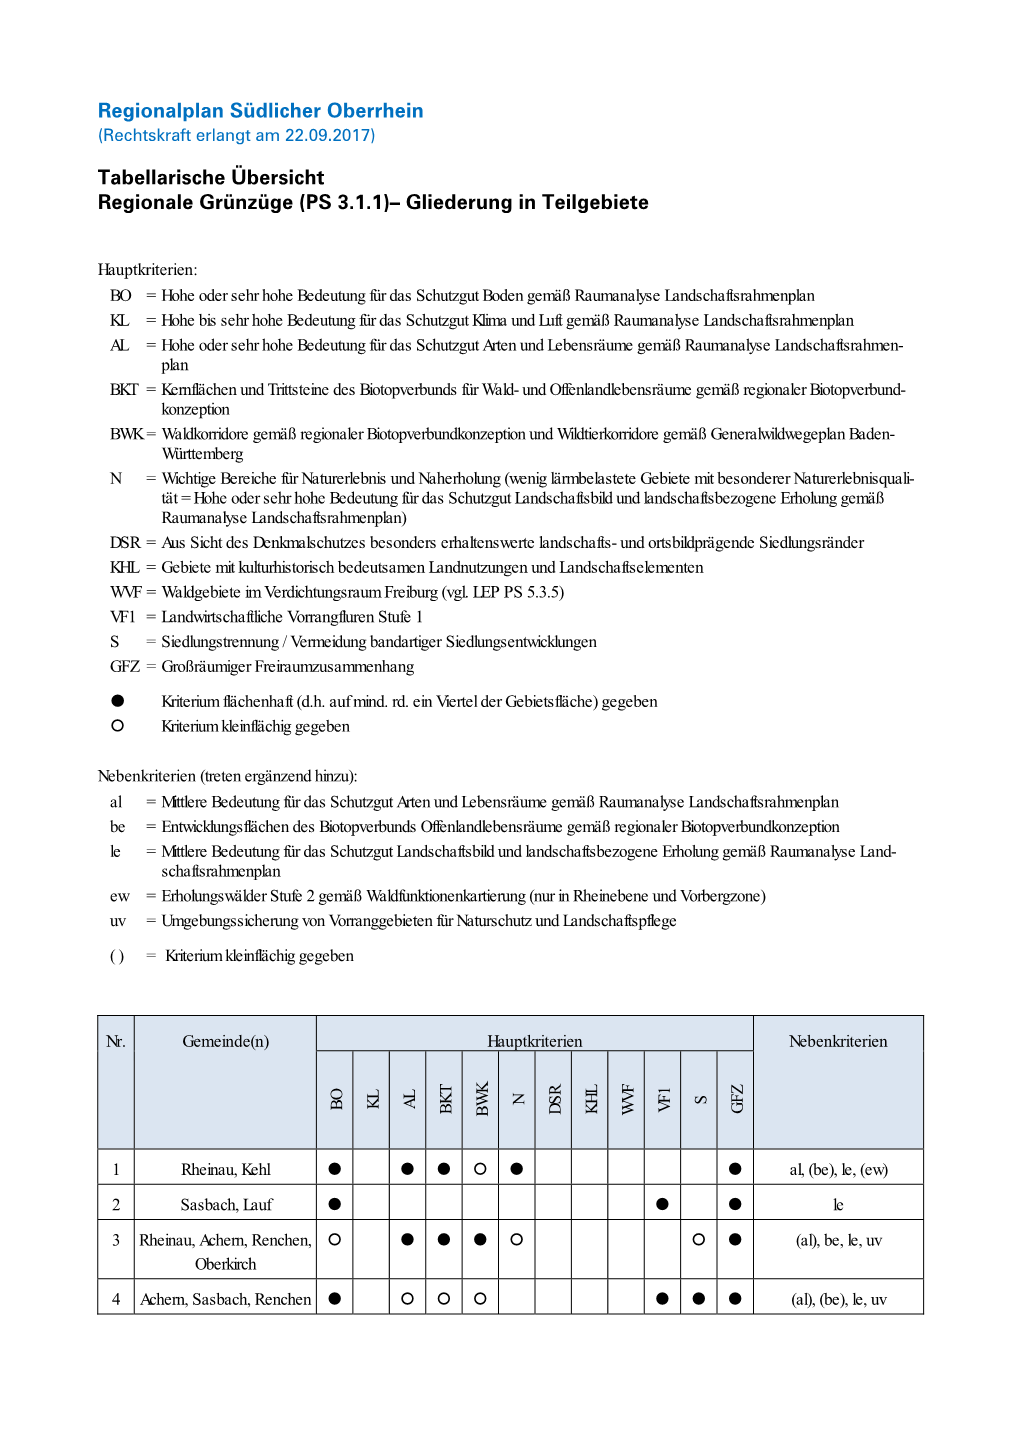 Regionalplan Südlicher Oberrhein Tabellarische Übersicht Regionale Grünzüge (PS 3.1.1)– Gliederung in Teilgebiete